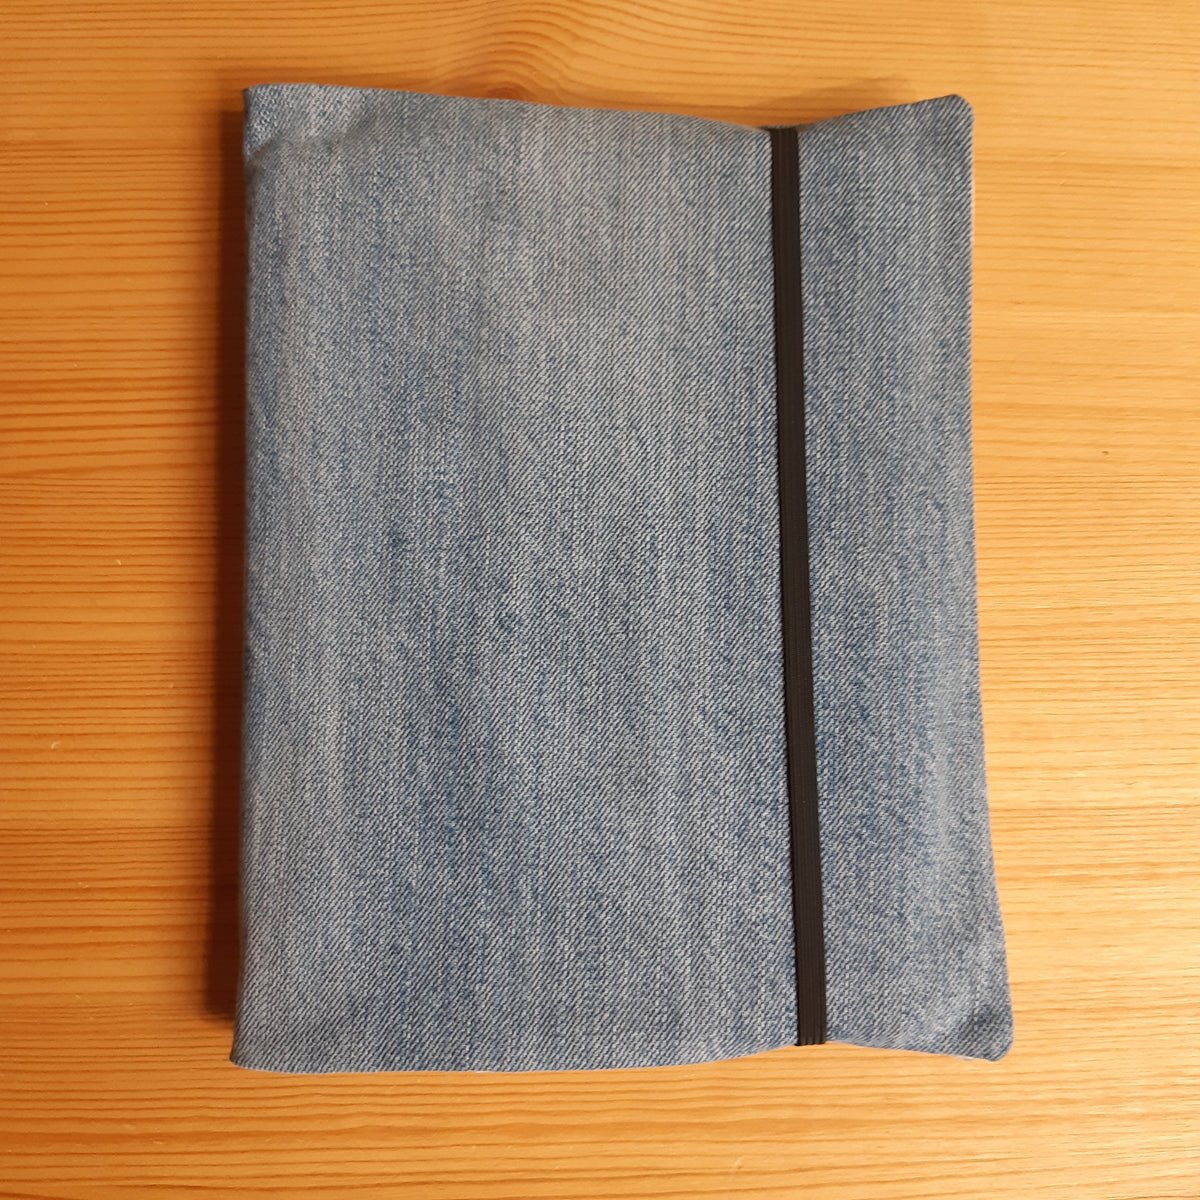 protege livre de poche taille differente recyclage upcycling textile jeans fonctionnel pratique utile fabrication francaise renaissance creation 